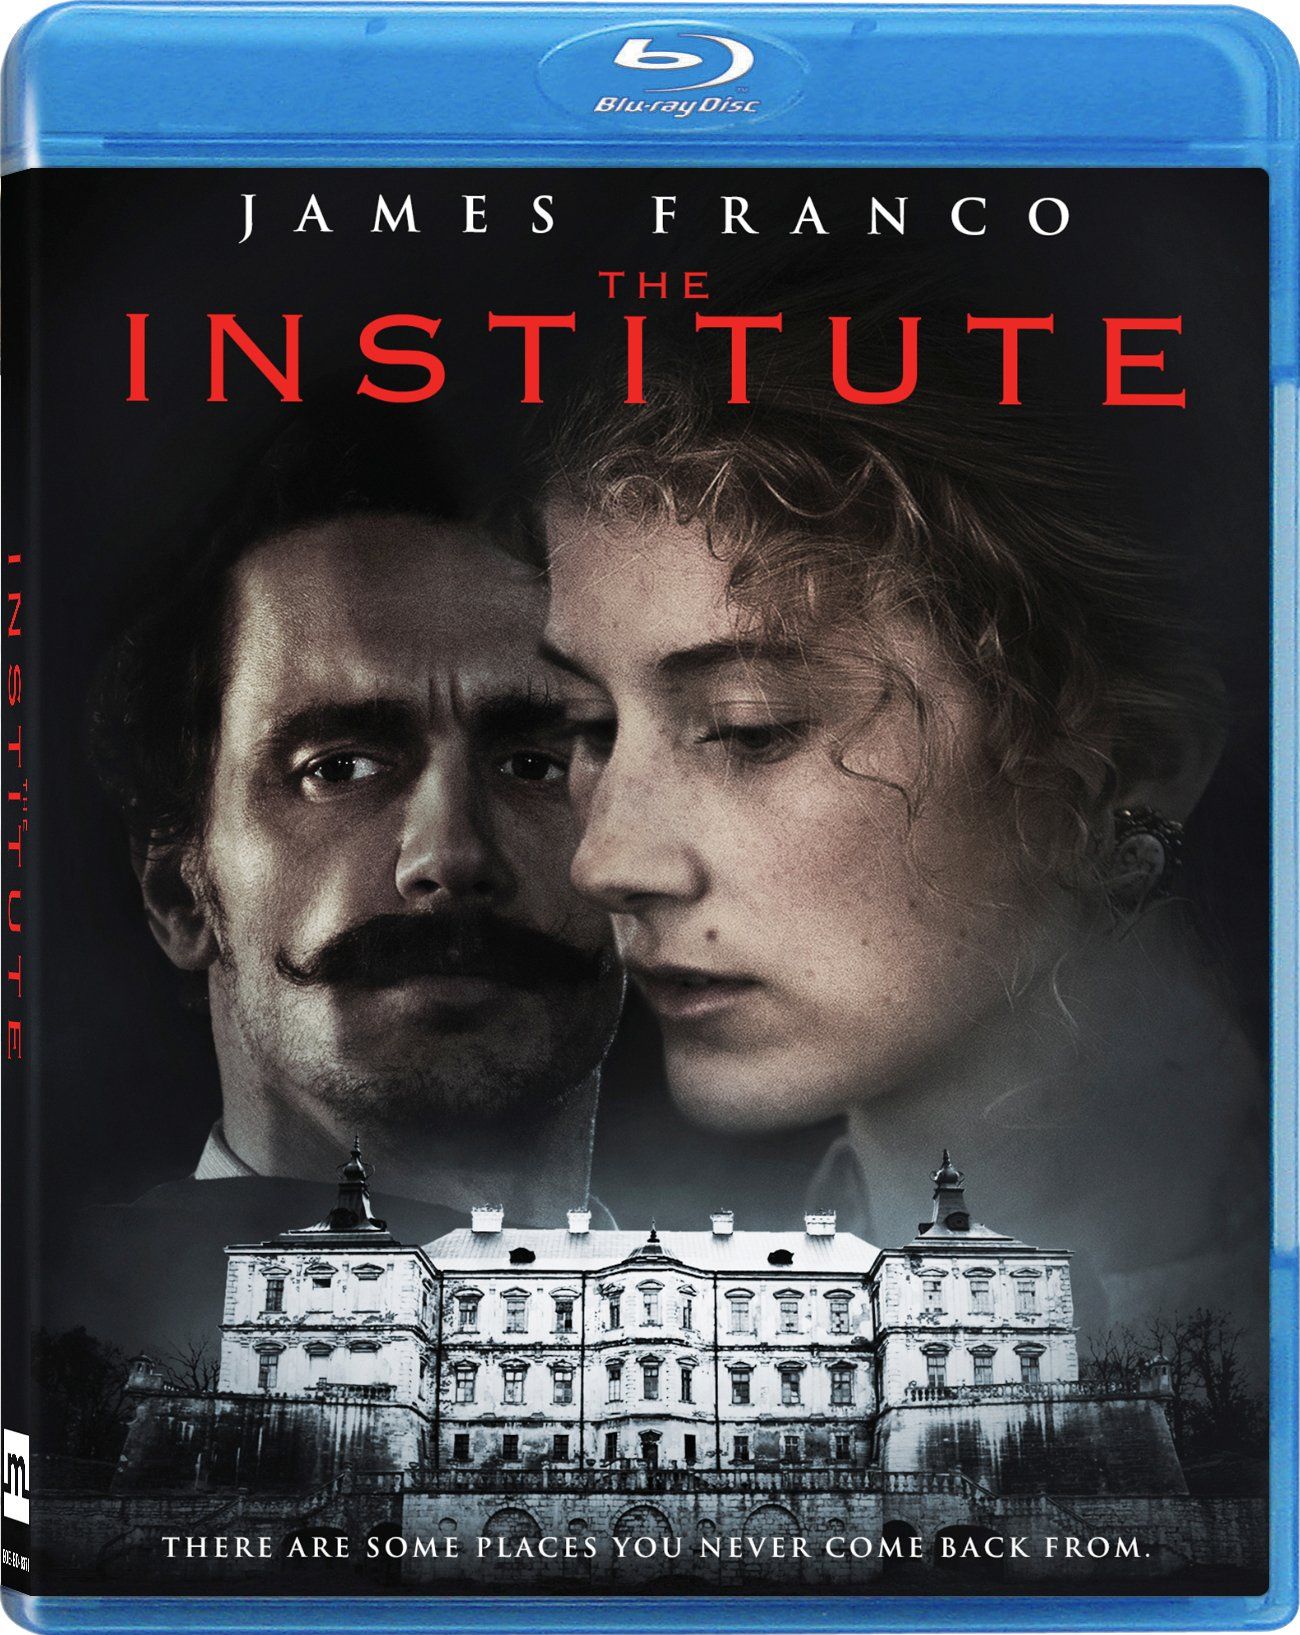 The Institute DVD Release Date April 4, 2017